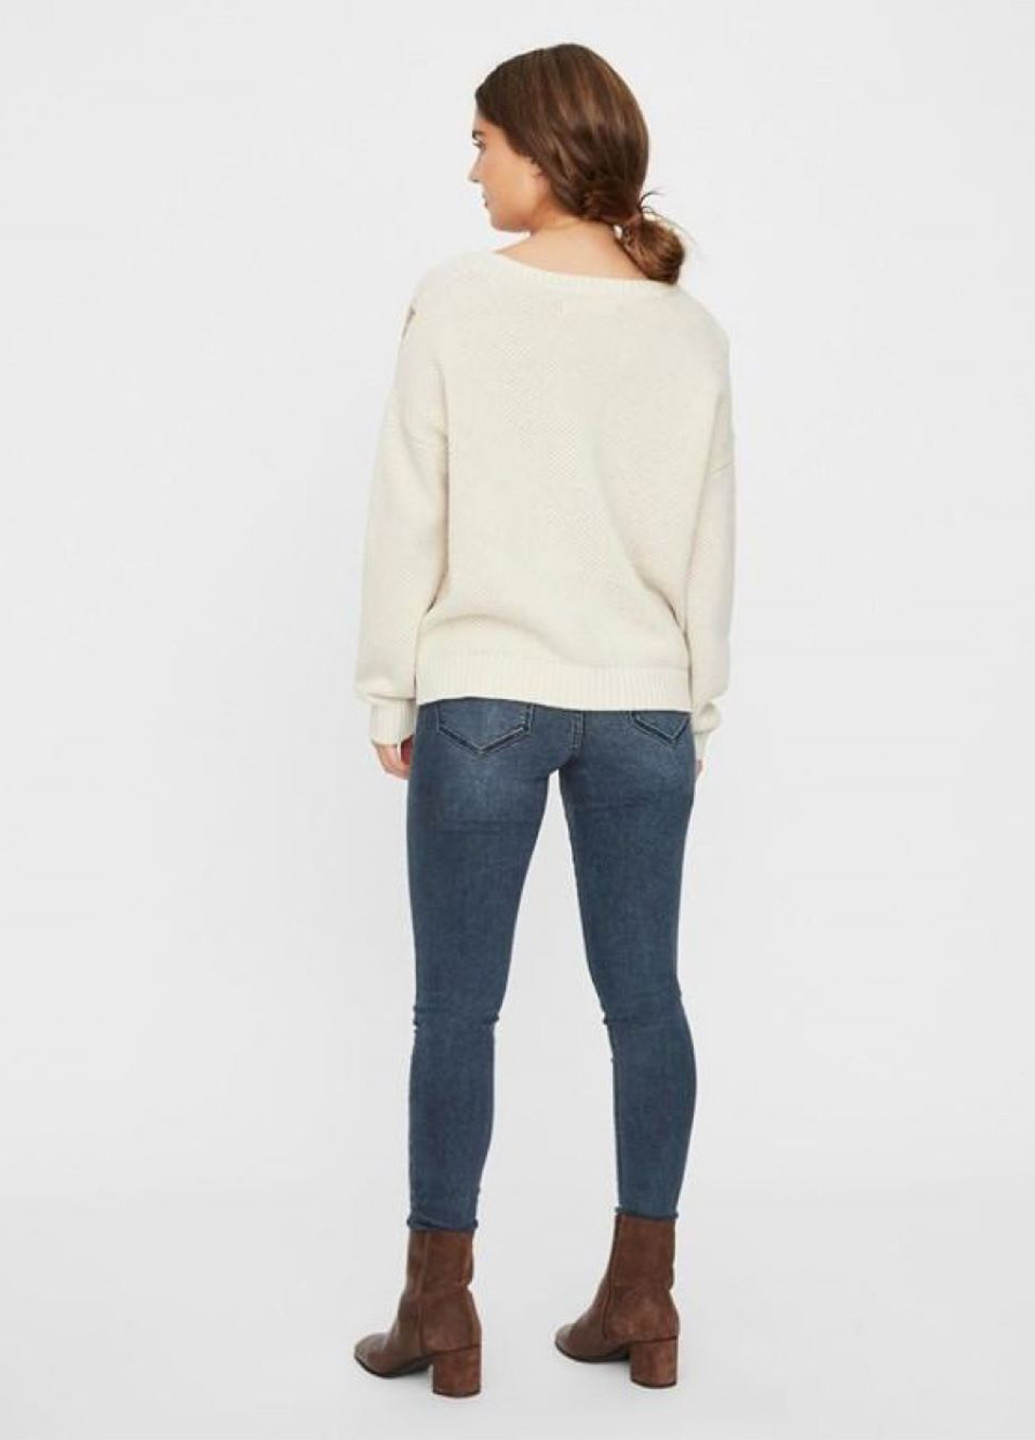 Комбинированный демисезонный пуловер пуловер Vero Moda